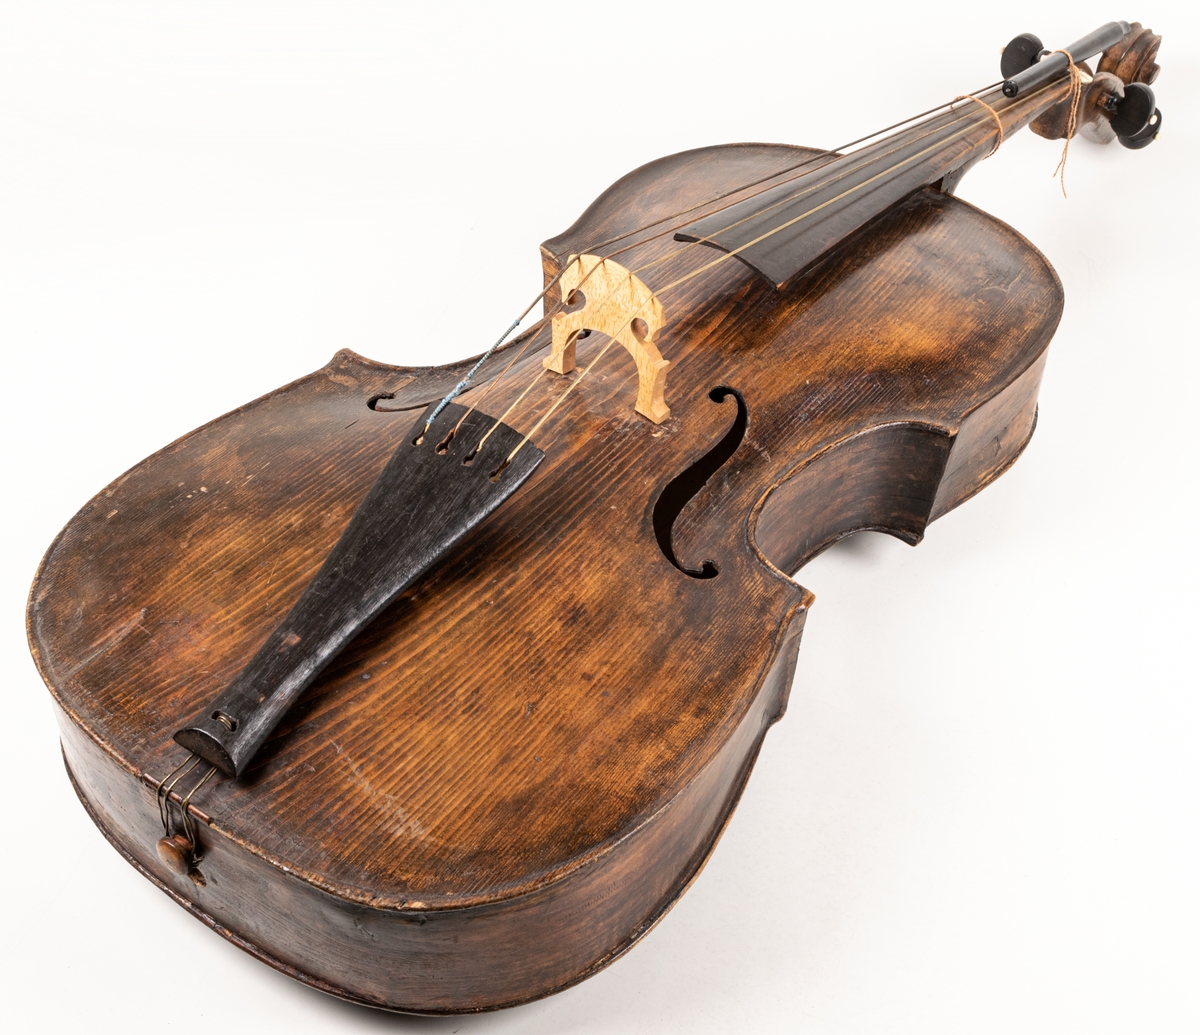 Cello, 1700-talet, brunsvart med 4 strängar, benknoppar på skruvarna för strängarnas spännande.